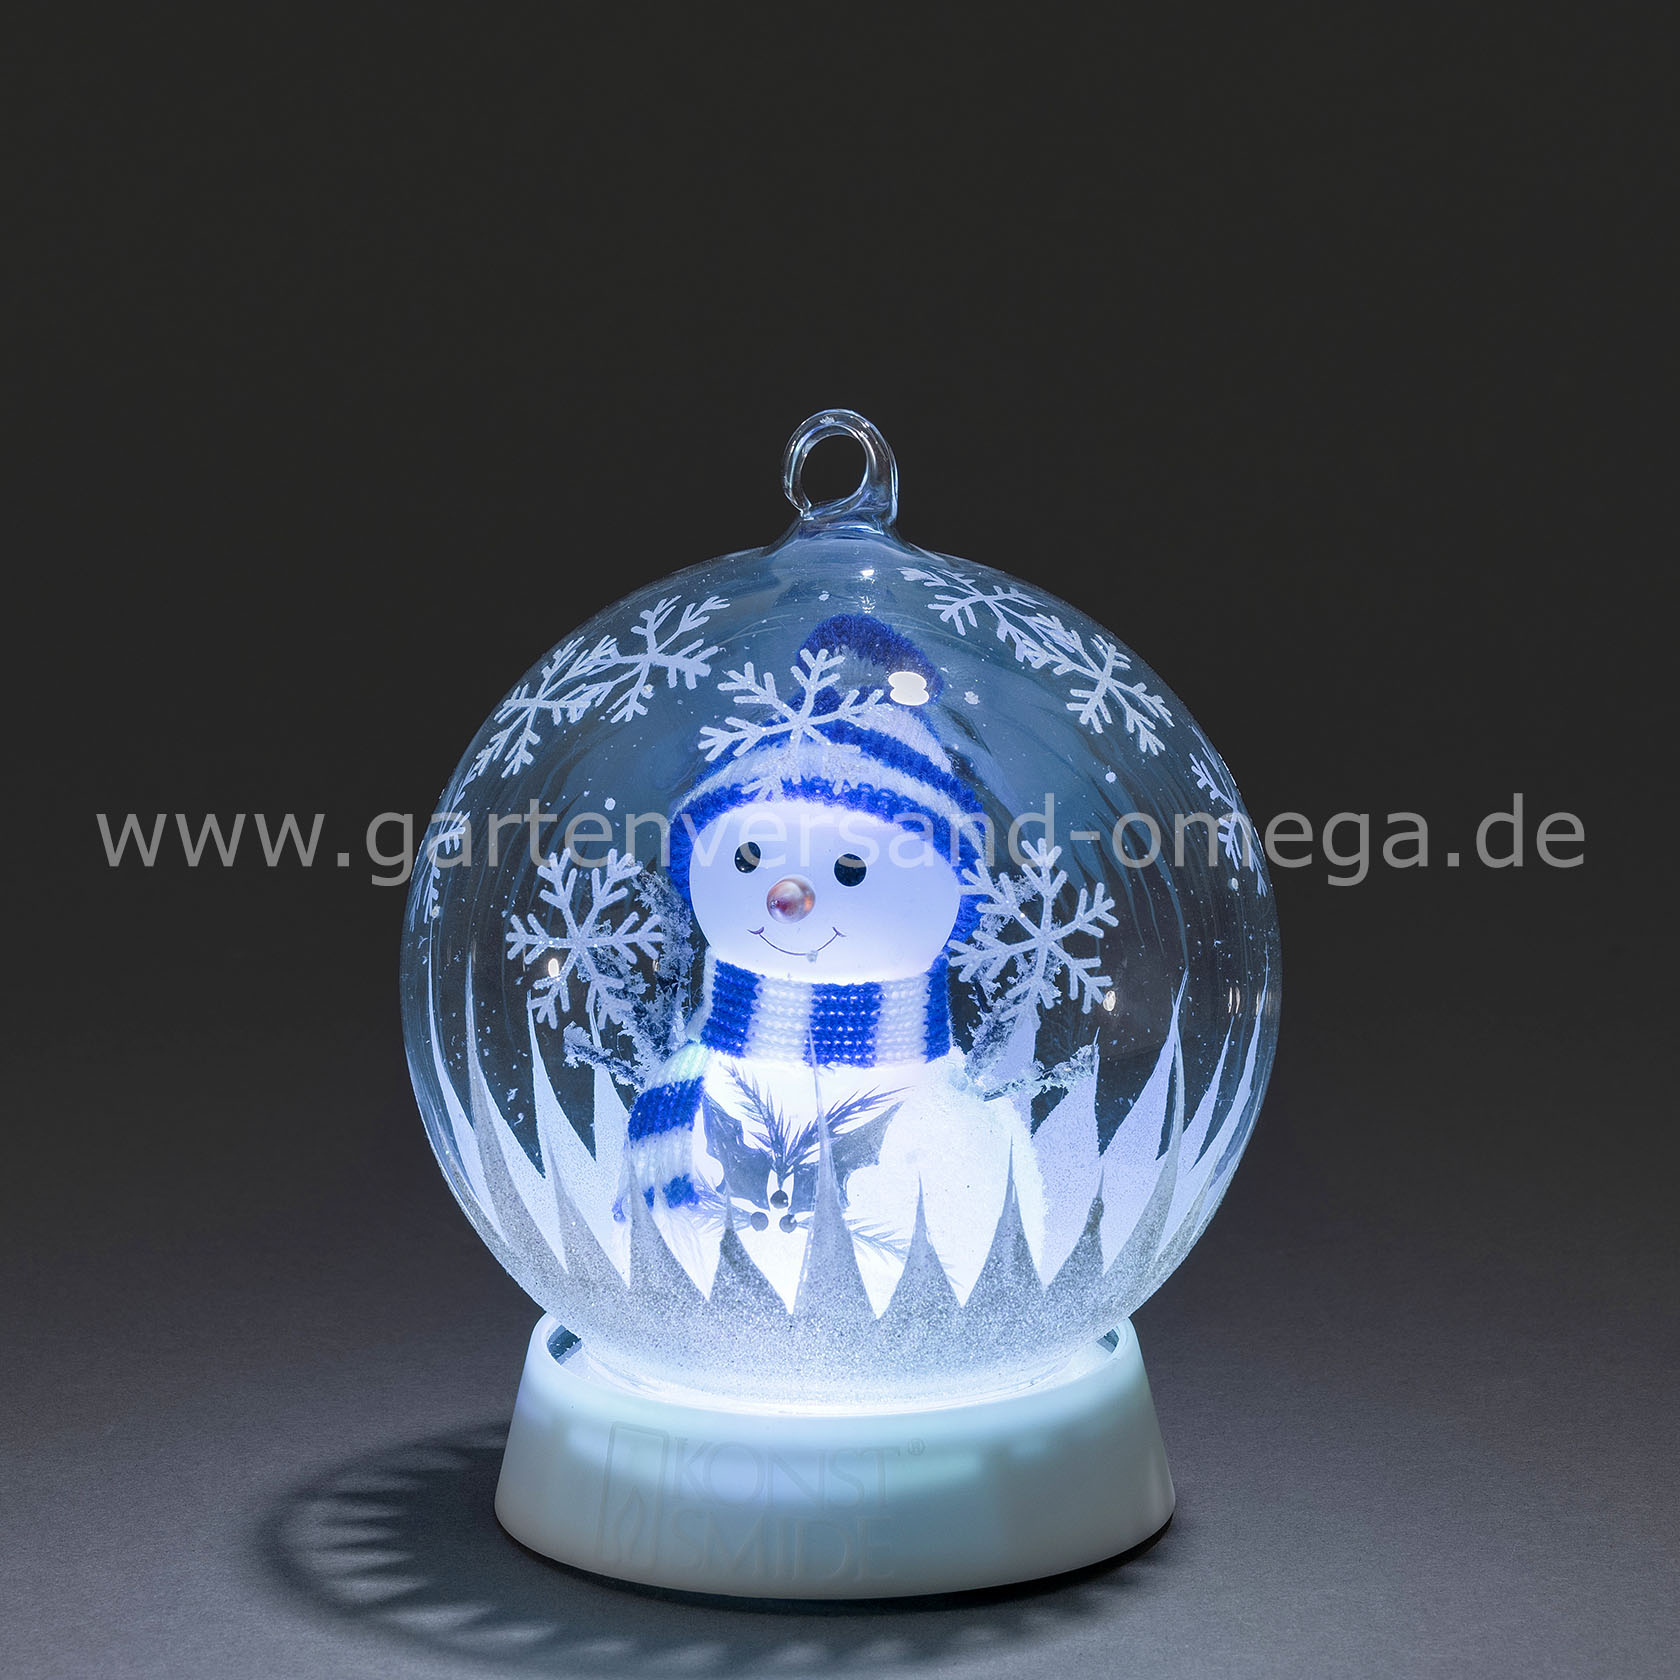 FengRise Weihnachtsdekoration LED Nachtlicht Santa Claus Projektor Lichter mit 4 Farben drehbares Muster Schneemann Weihnachtsbaum Glocke für Weihnachtsschmuck Schneeflocke 